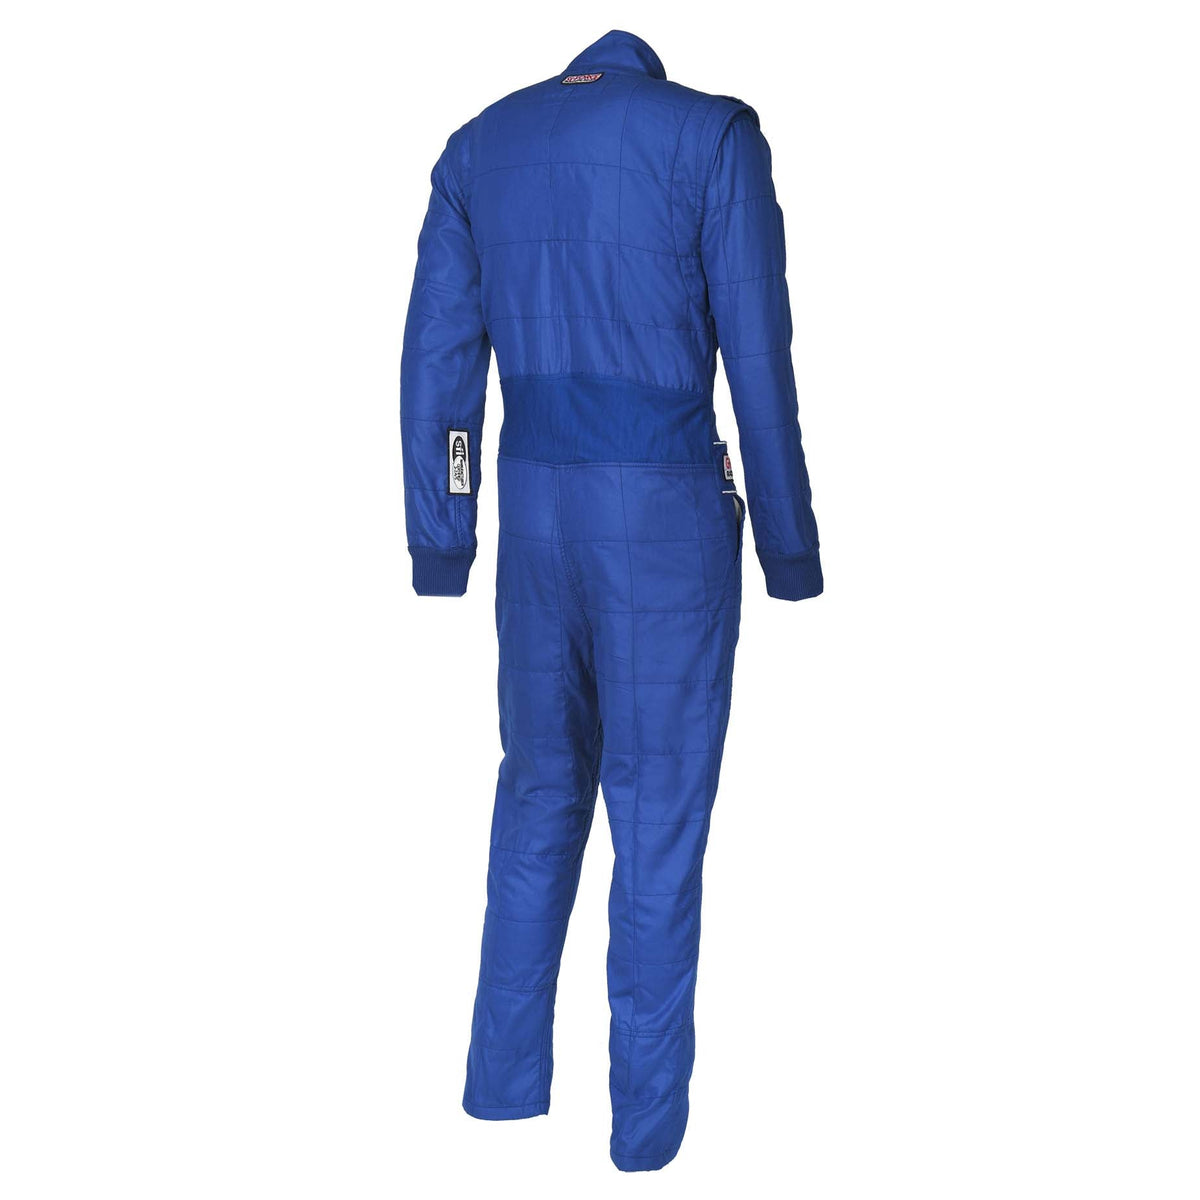 G-Force G-Limit Racing Suit - Back, Blue